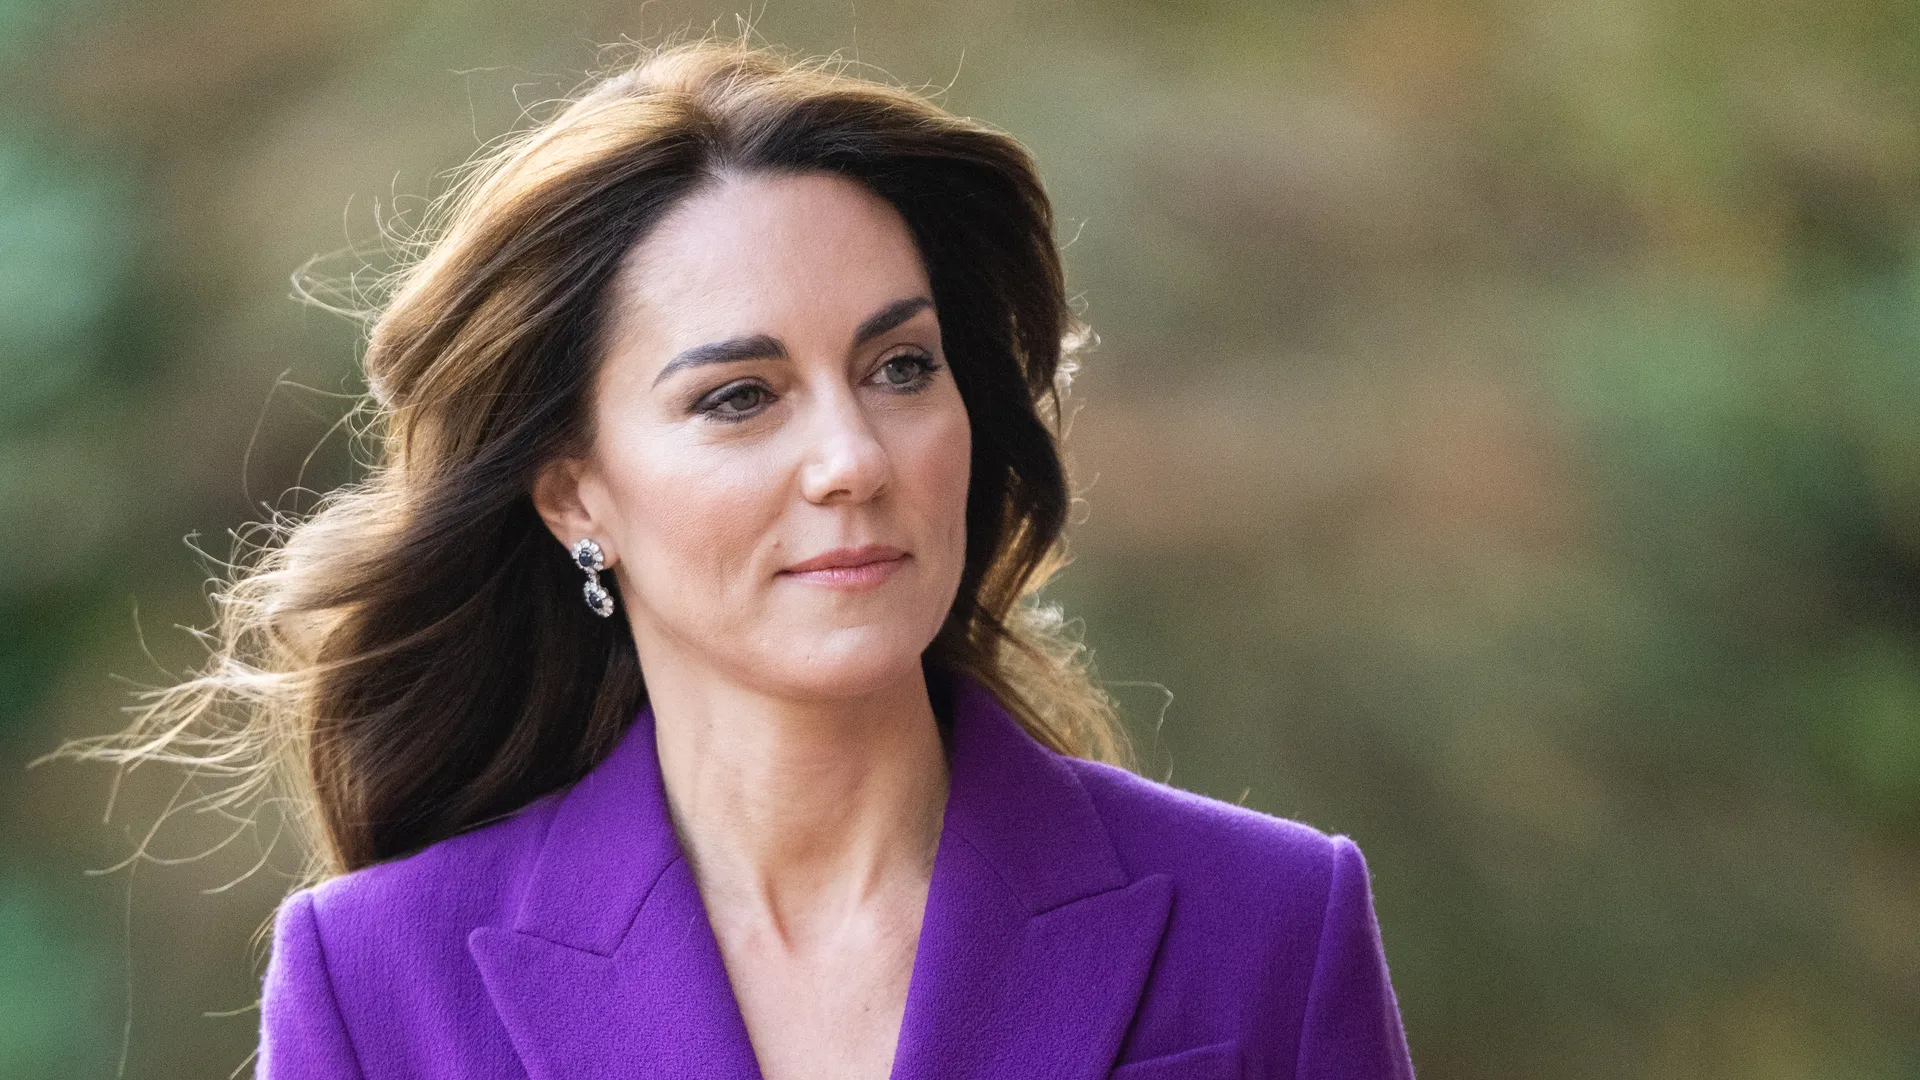 Công nương Kate và hoàng gia không công bố cụ thể về căn bệnh ung thư mà cô mắc